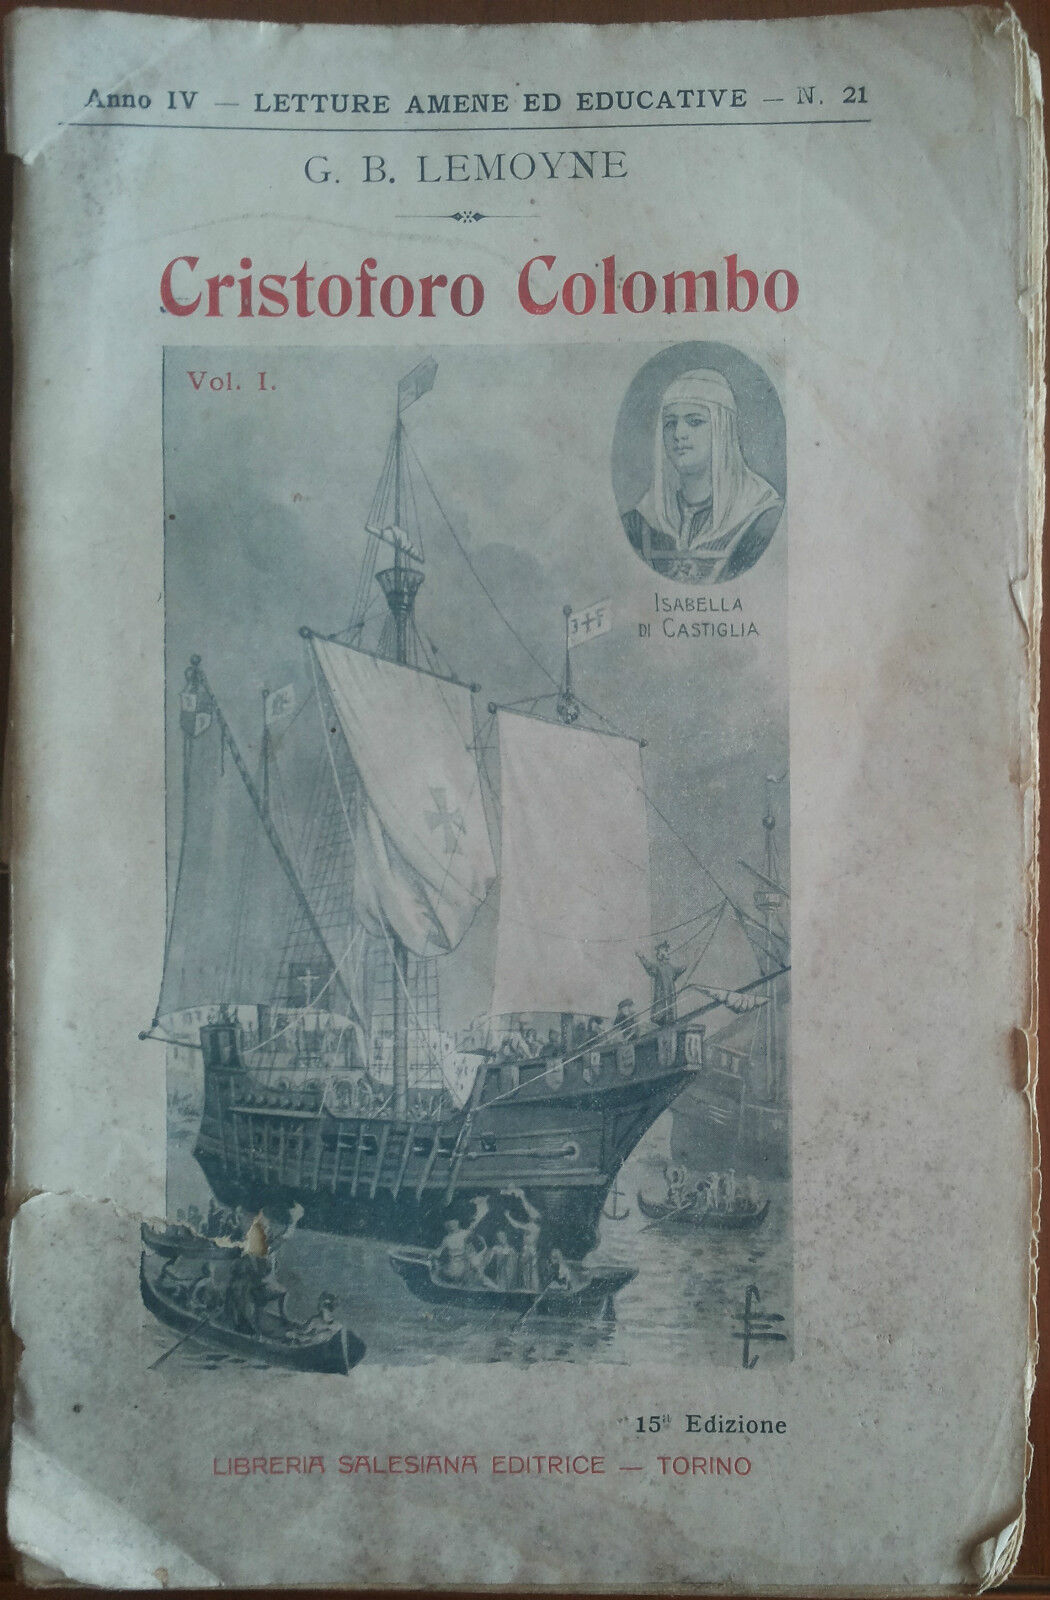 Cristoforo Colombo - G.B. Lemoyne -  Libreria salesiana,1909 - A